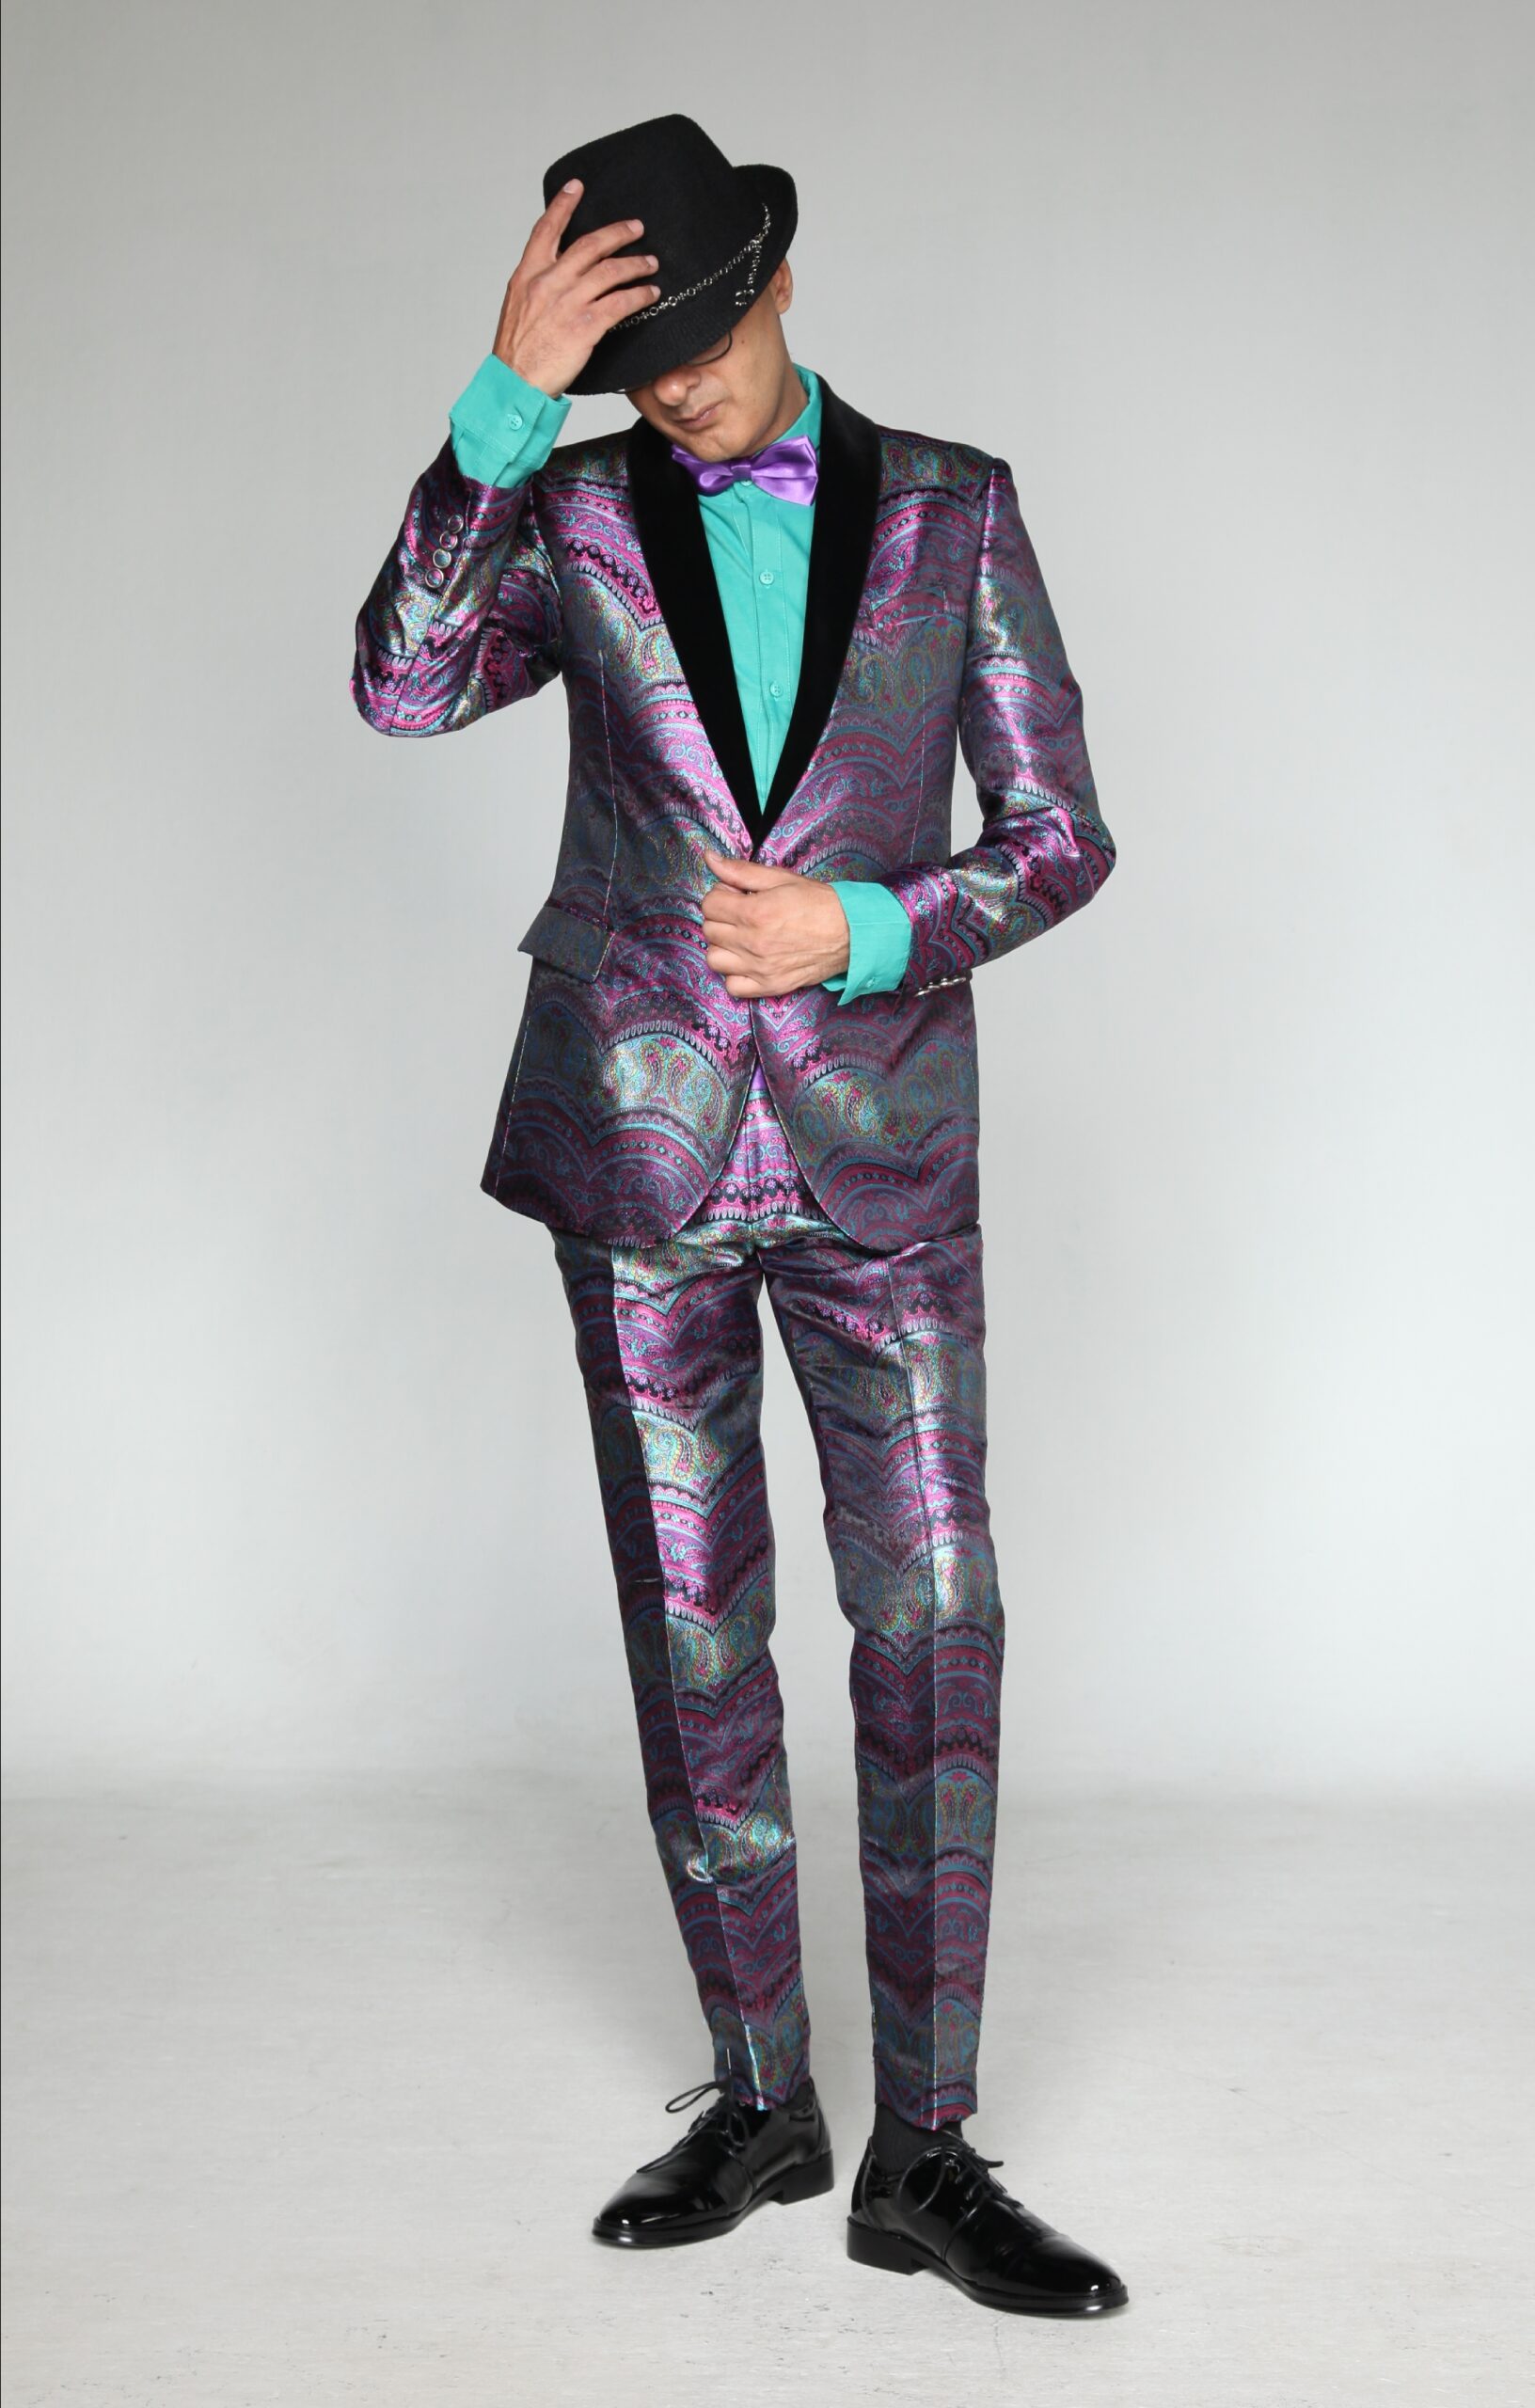 MST-5047-03-rent_rental_hire_tuxedo_suit_black_tie_suit_designer_suits_shop_tailor_tailors_singapore_wedding